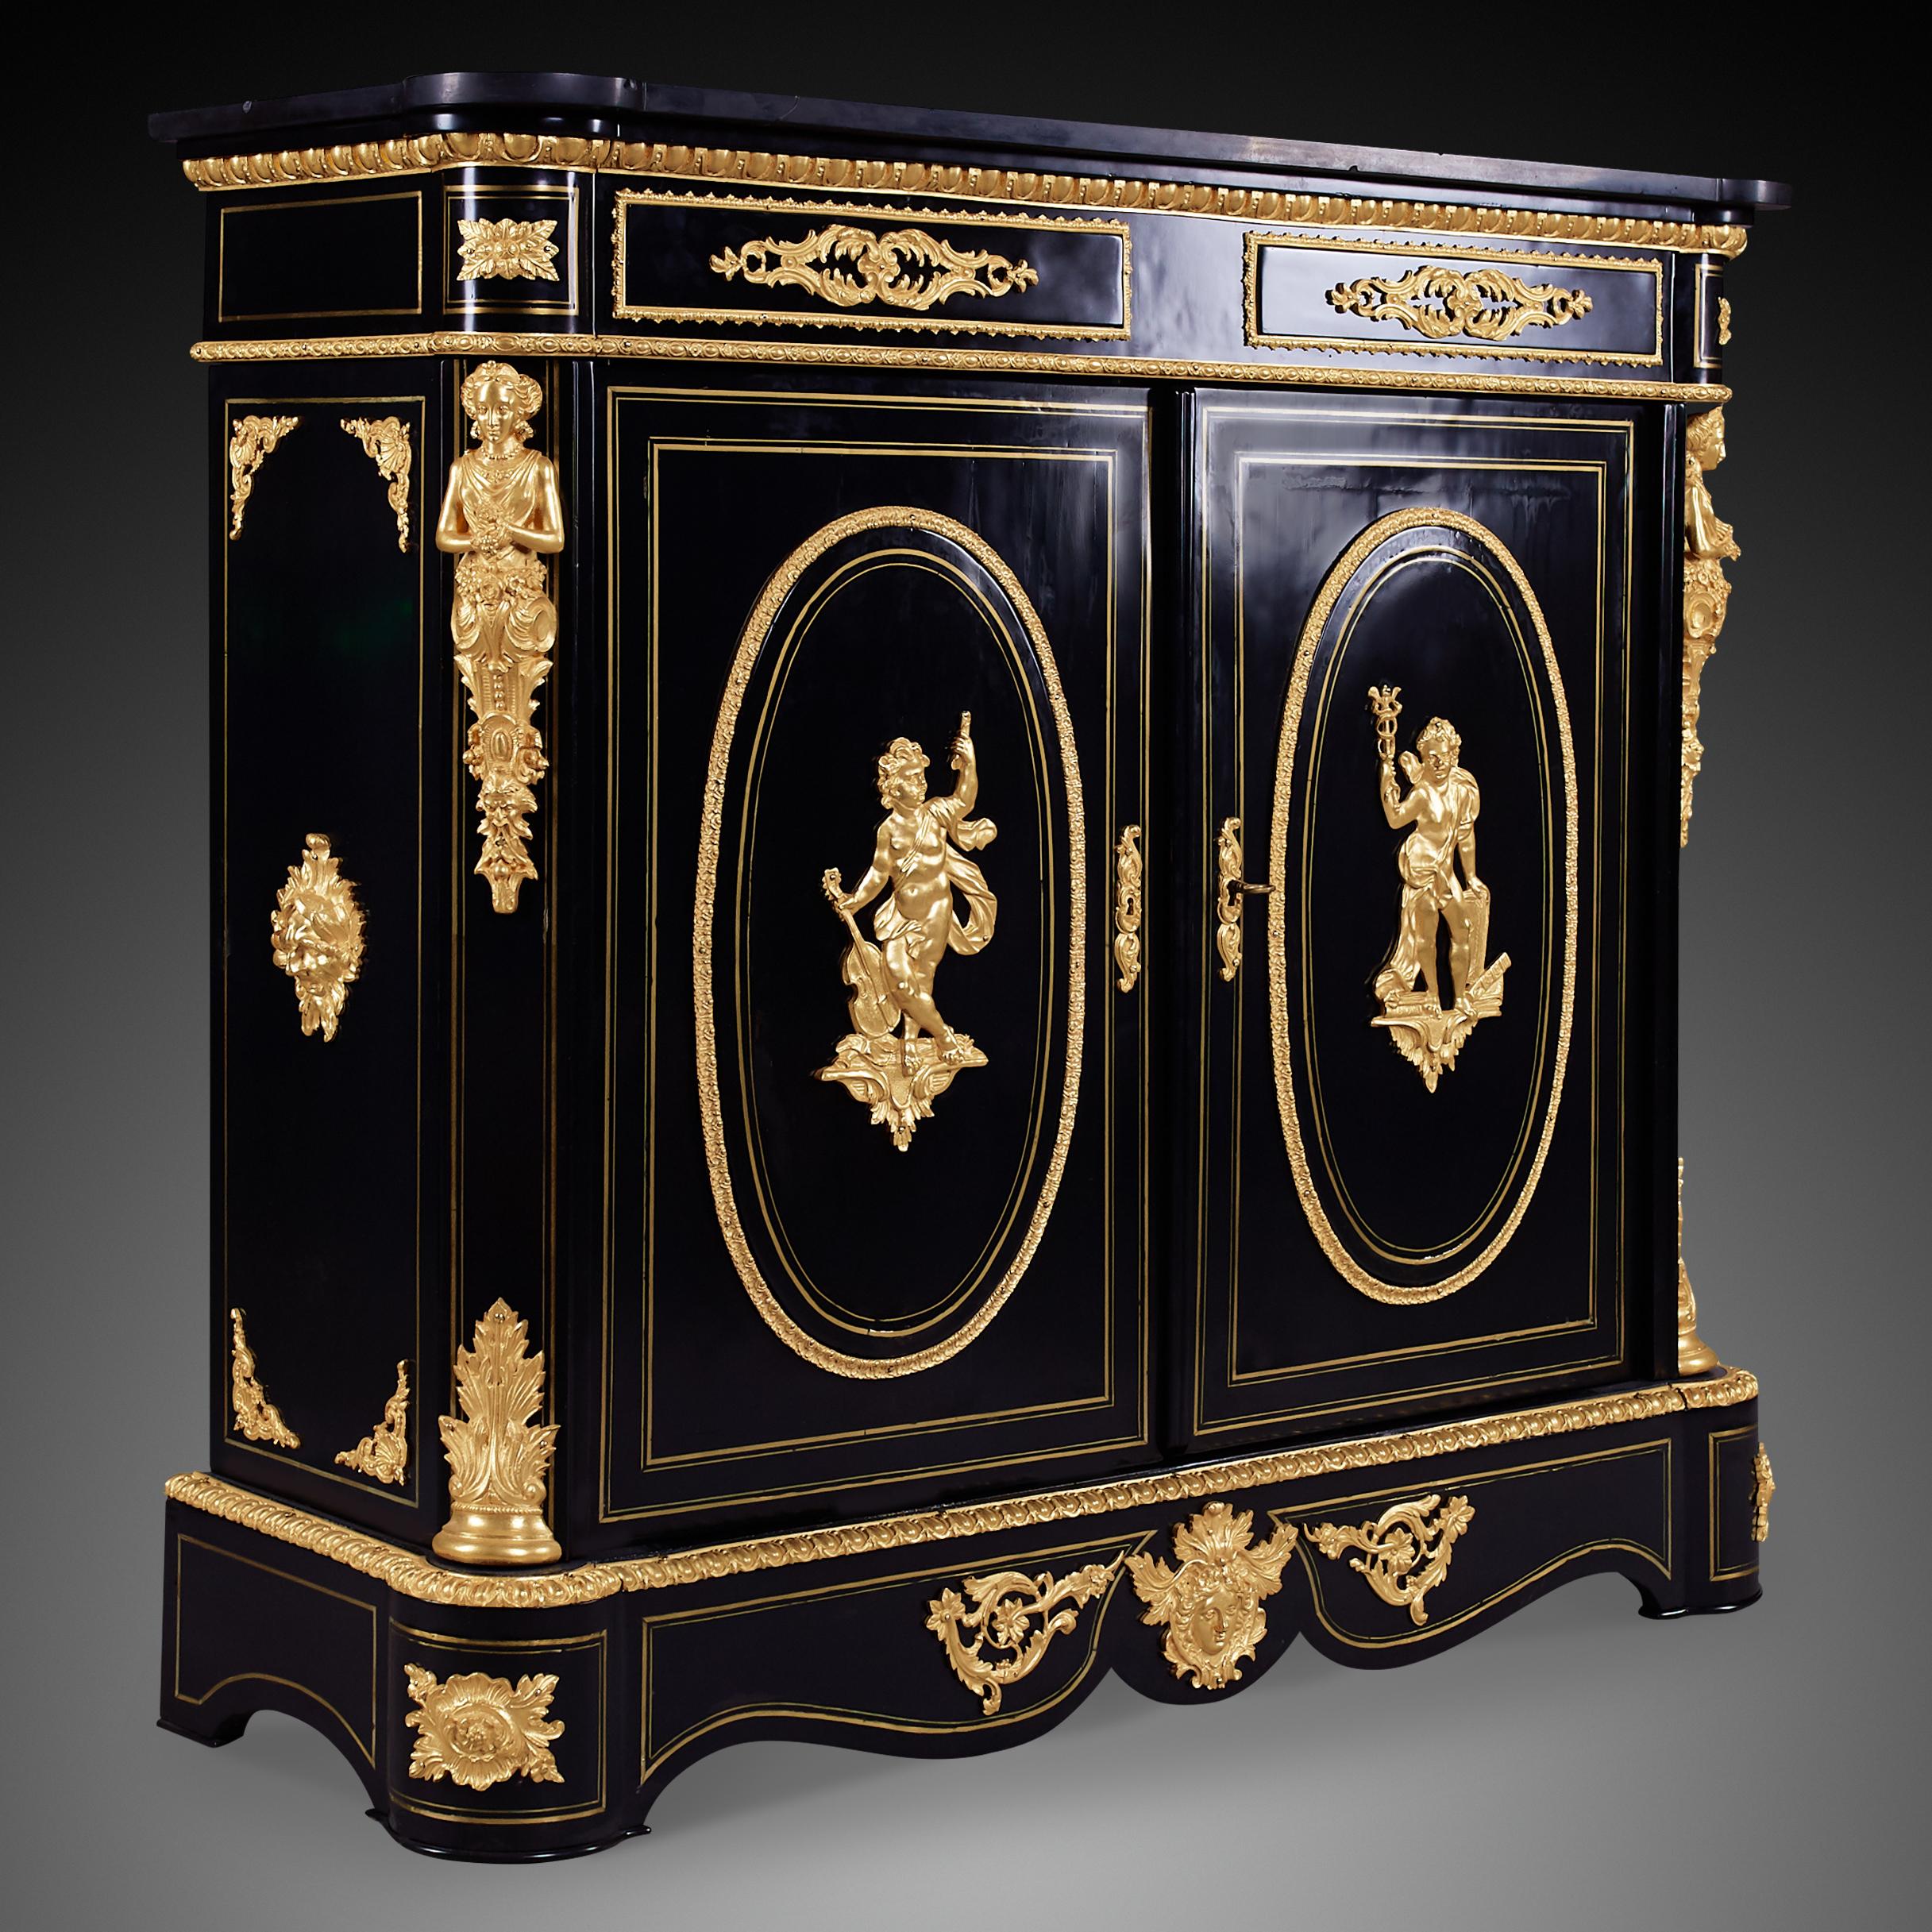 Ein prächtiger rechteckiger schwarzer 2-türiger Schrank im Stil von Napoleon III. Große und kleine Details sind vergoldet und sorgen für ein antikes und luxuriöses Aussehen. Medaillons aus Messing sind mittig auf jeder Tür angebracht und zieren auch